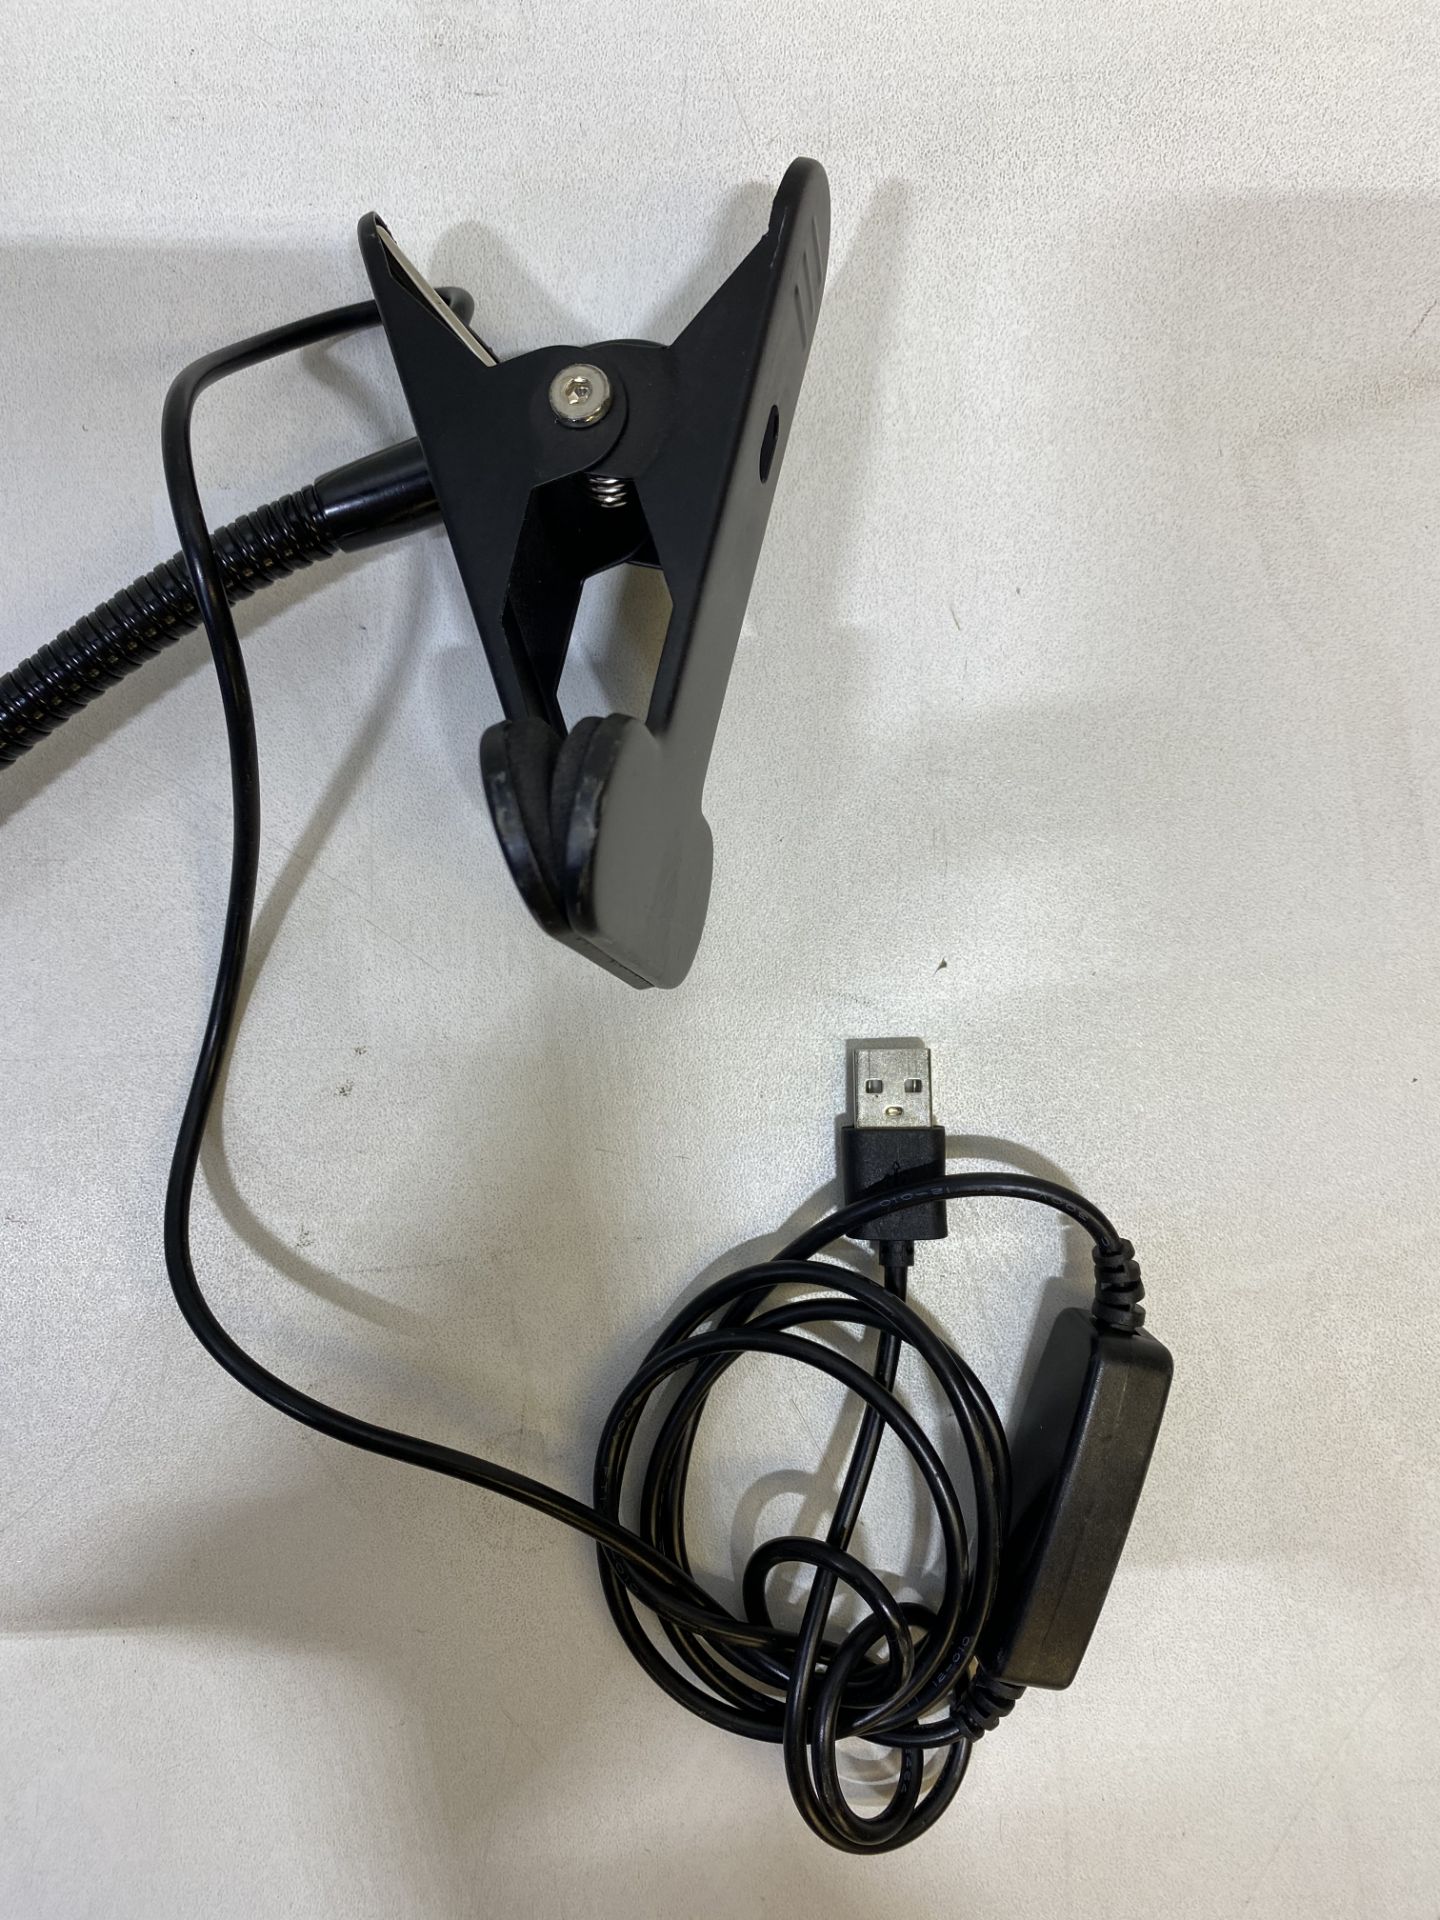 3 x HL-TJ8010A-2 USB Clip Dimmer Lights - Image 4 of 5